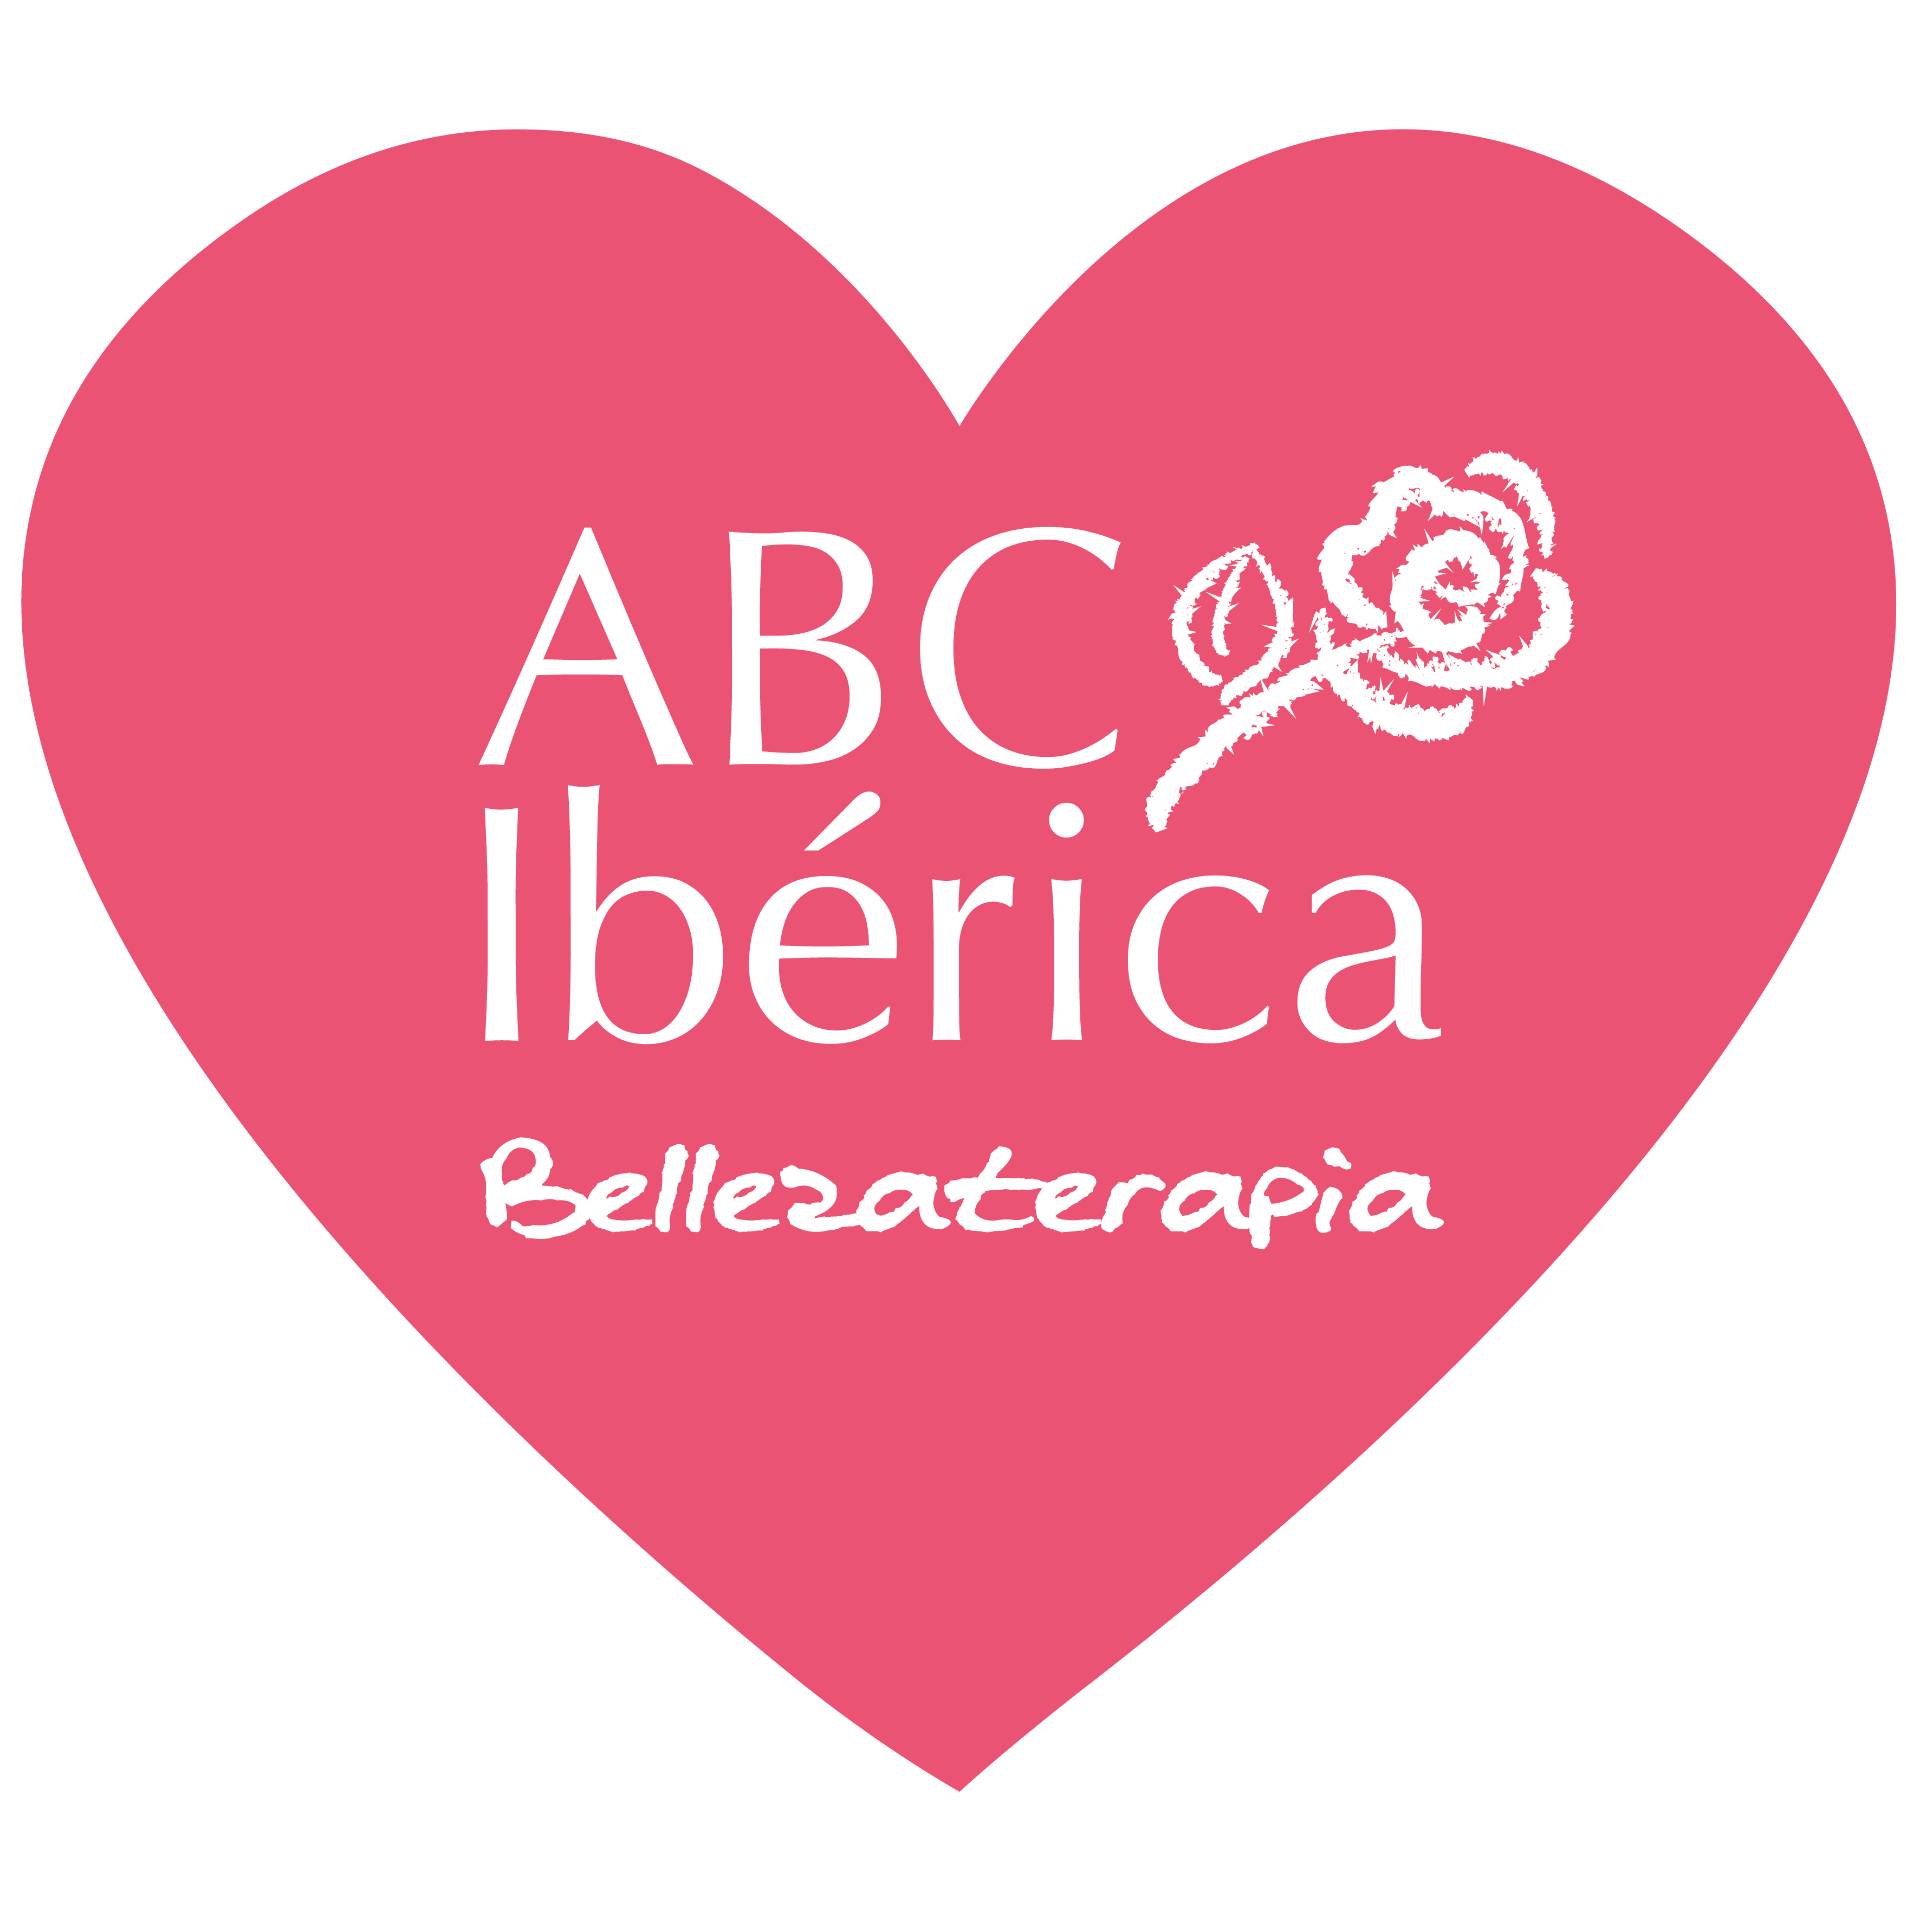 ABC Ibérica pone en marcha sus ofertas - ABC Breast Care Ibérica